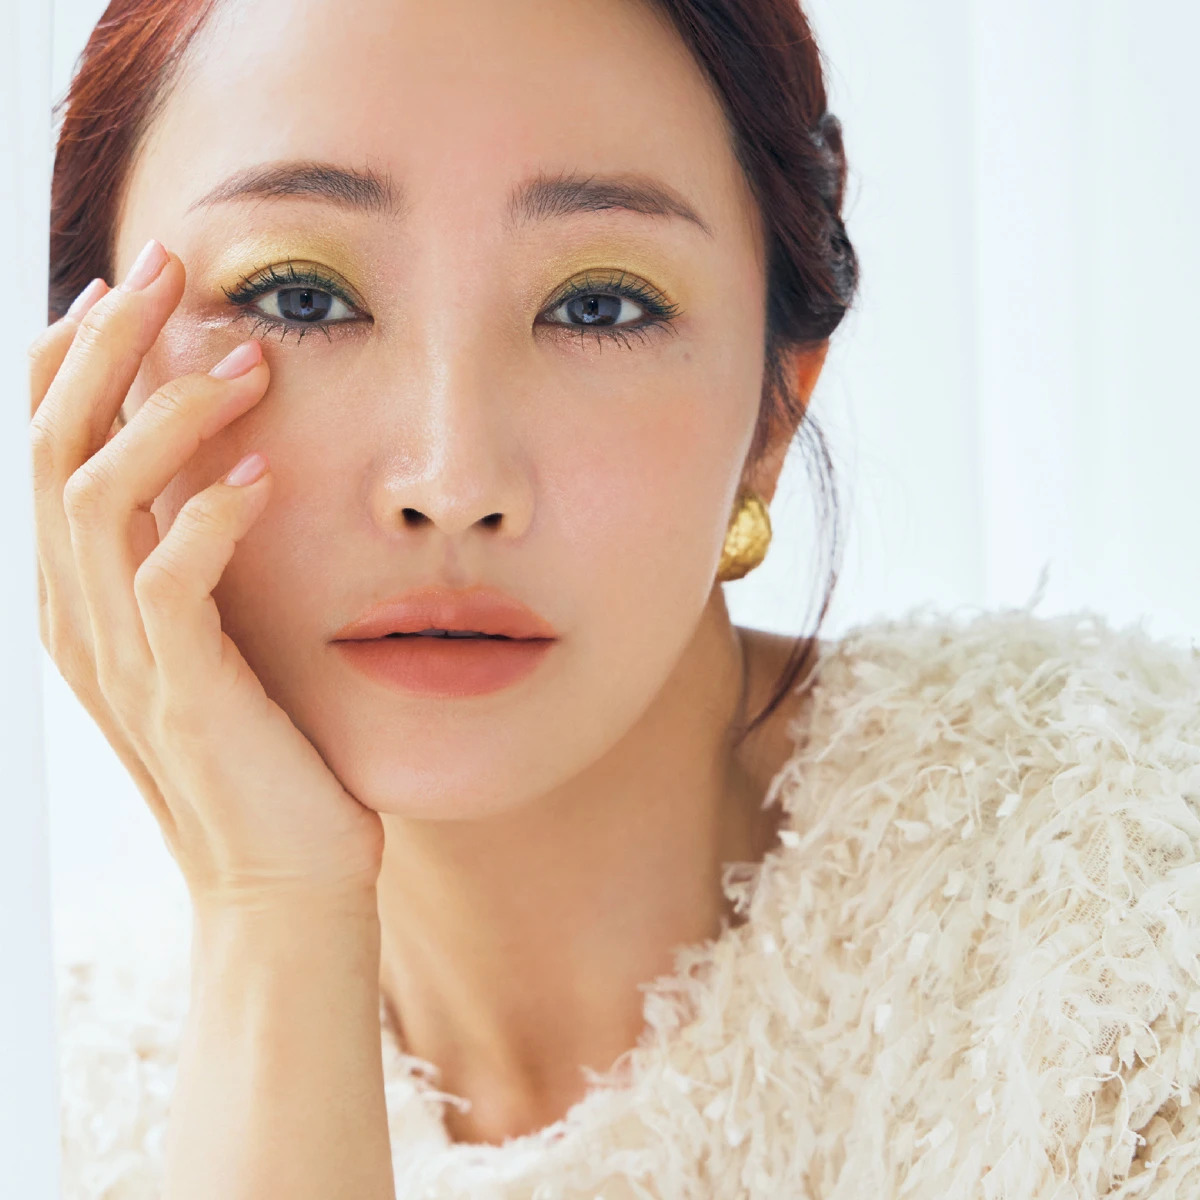 美容家・神崎 恵さんの「大人のトリセツ」。歳を重ねるほど“自分軸”を大切に